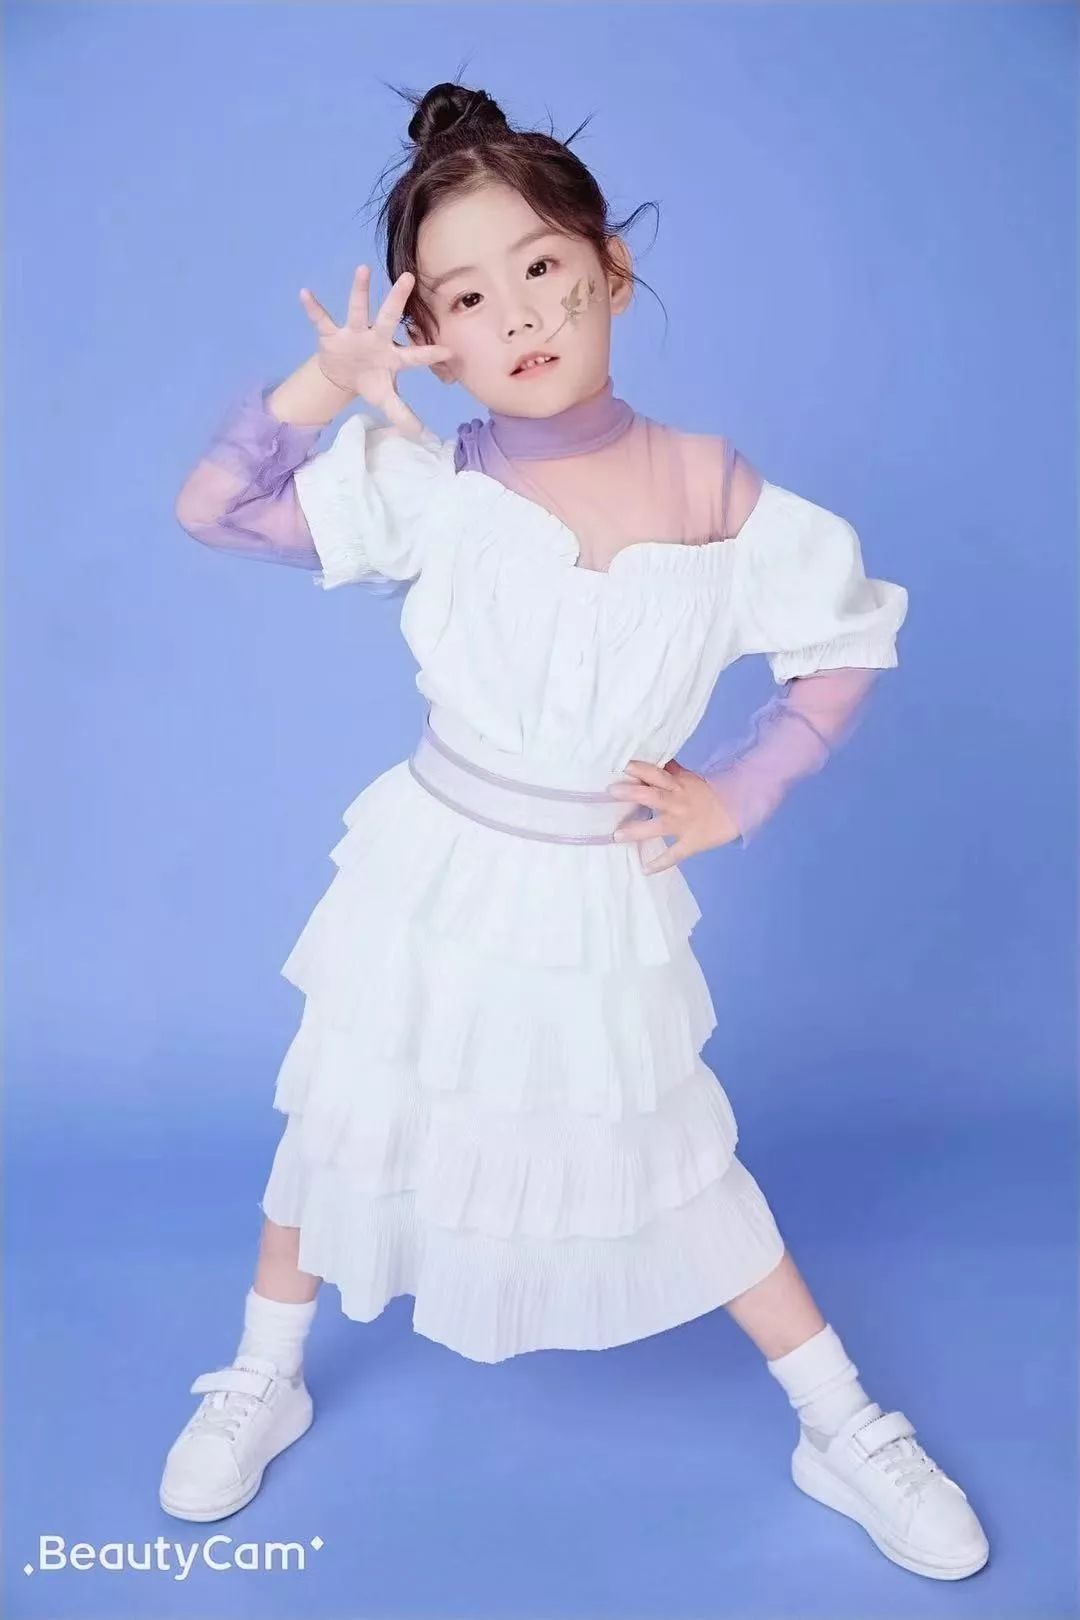 黄山区潮童模特公司简介潮童model是黄山市潮童文化创意有限公司